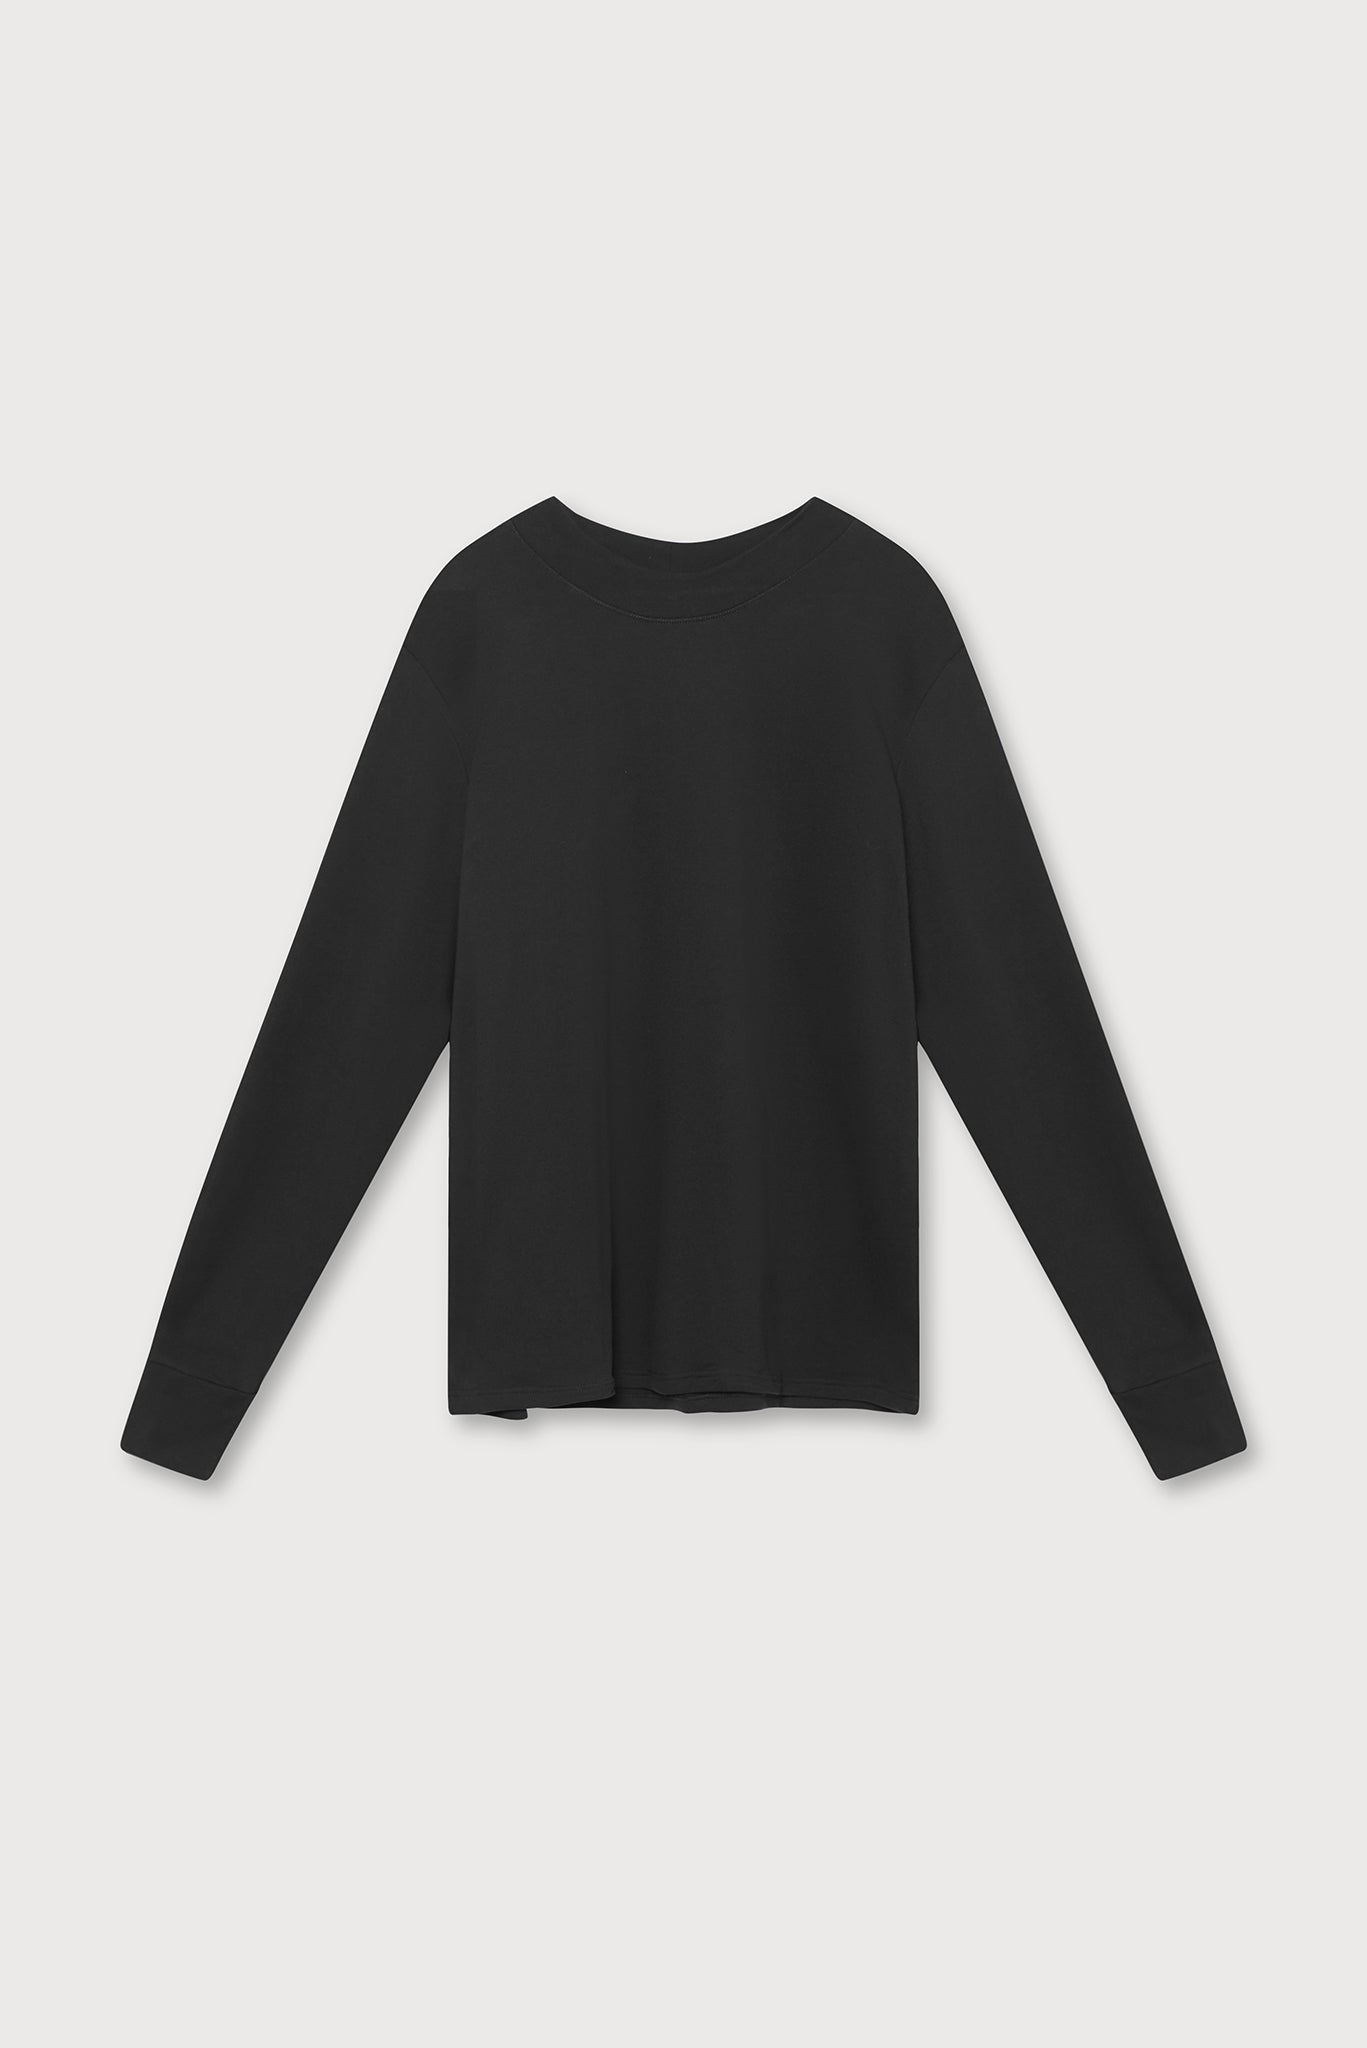 A.BCH A.33 Black Sweater in Organic Cotton